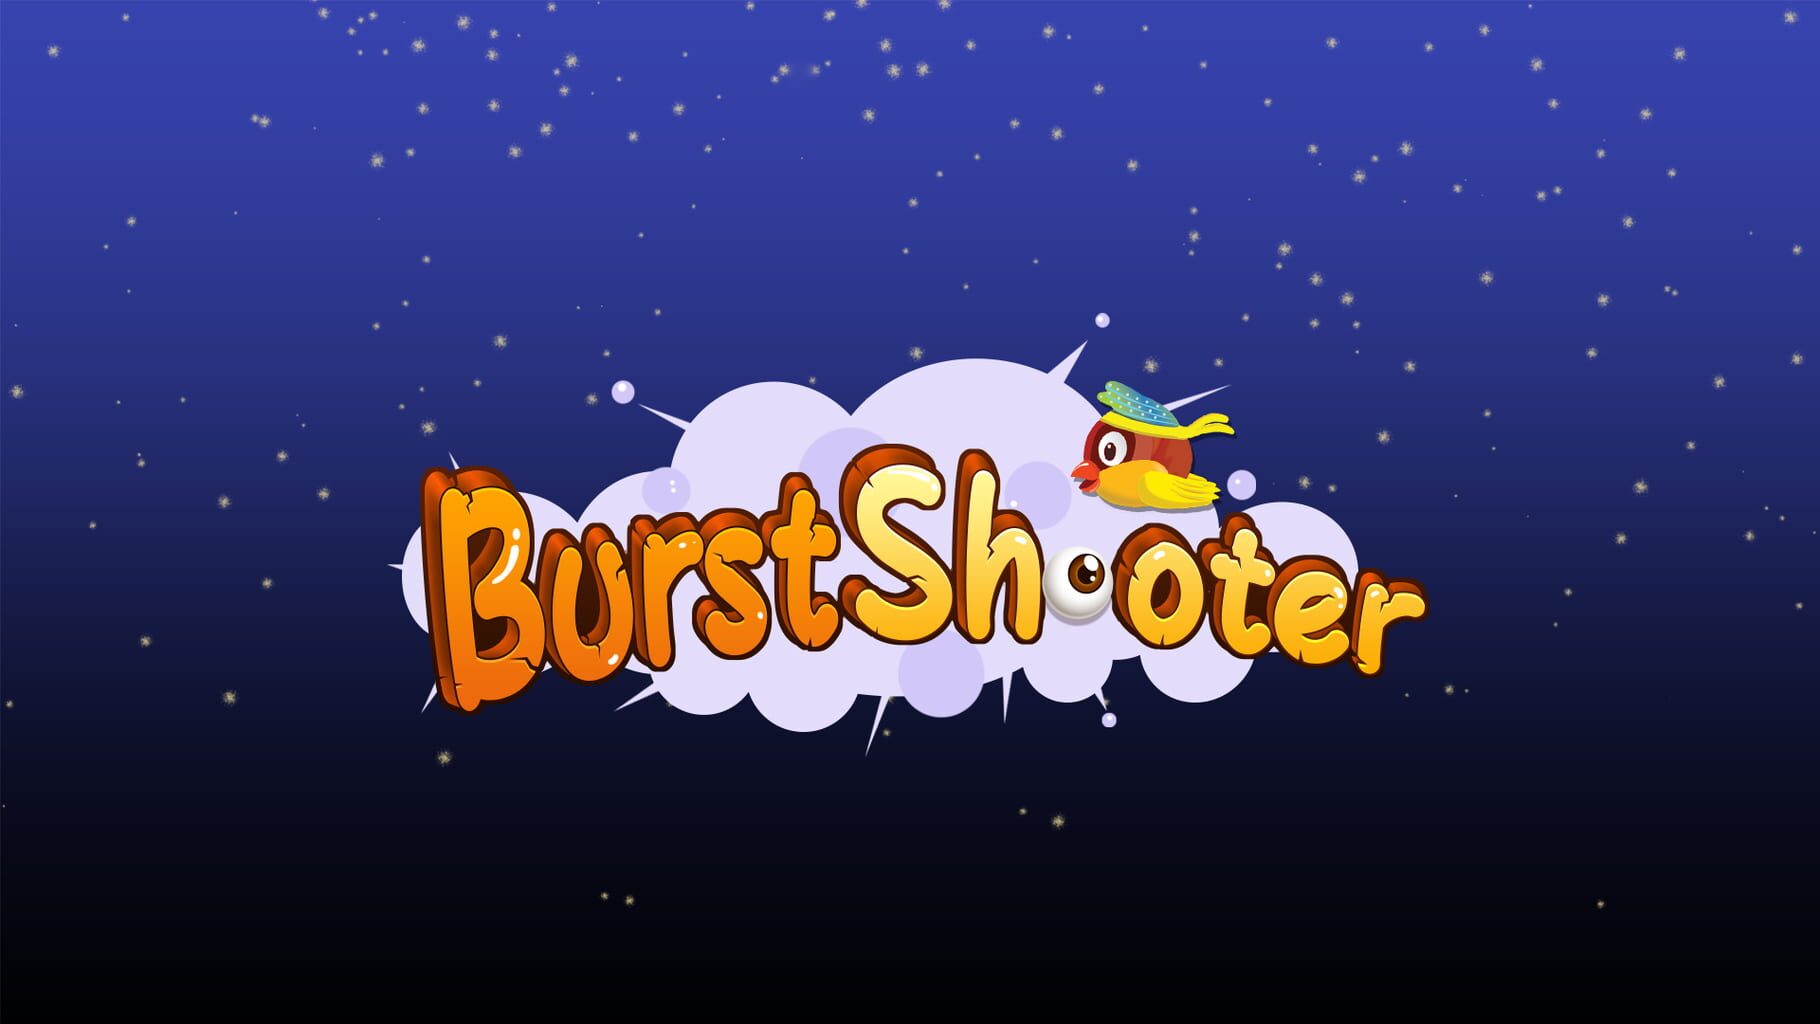 Burst Shooter artwork